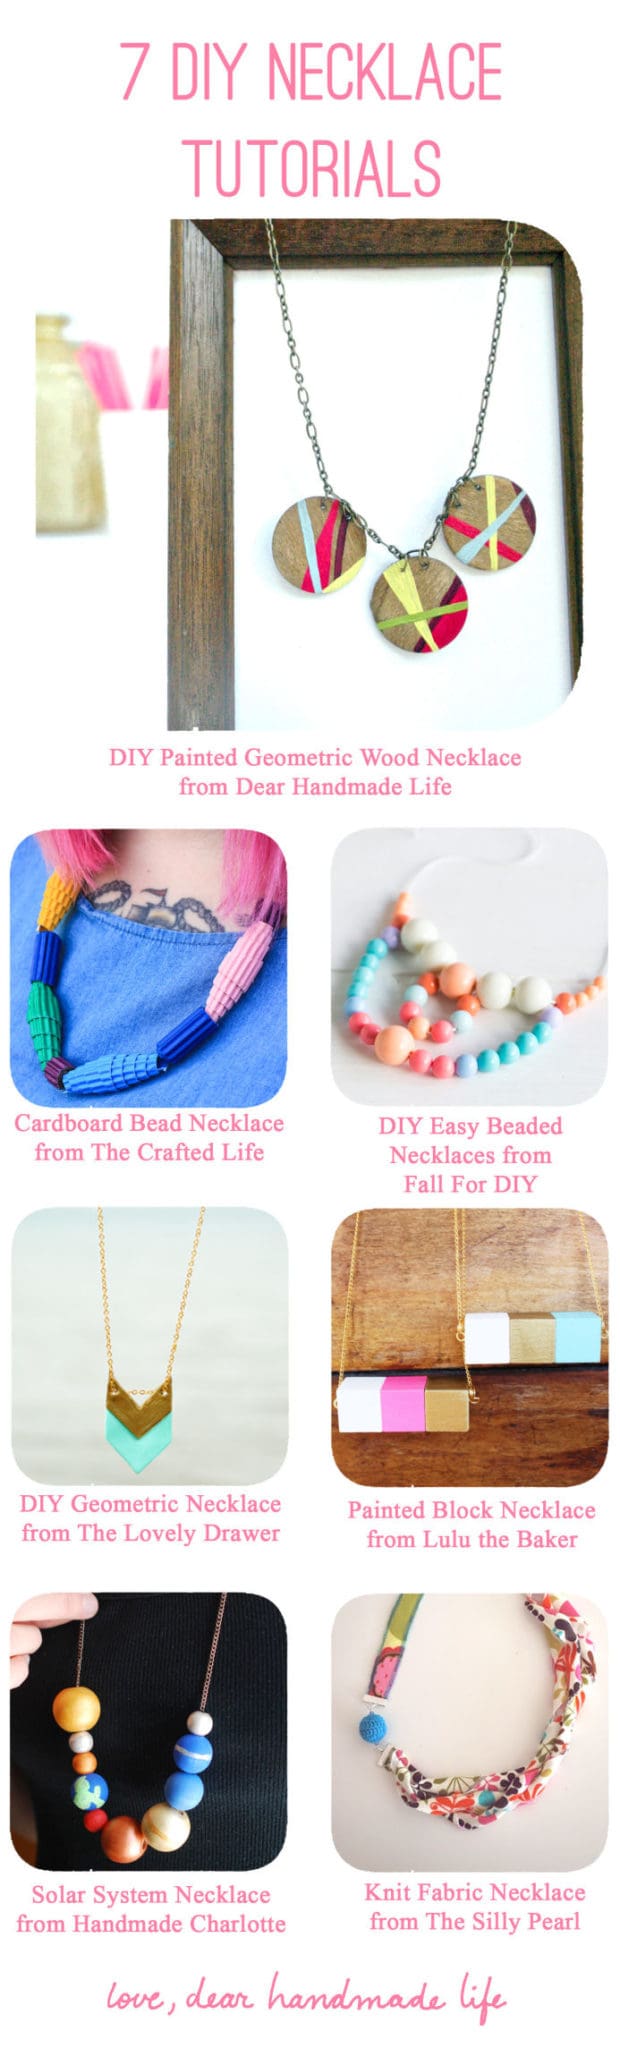 7 DIY necklace tutorials from Dear Handmade Life